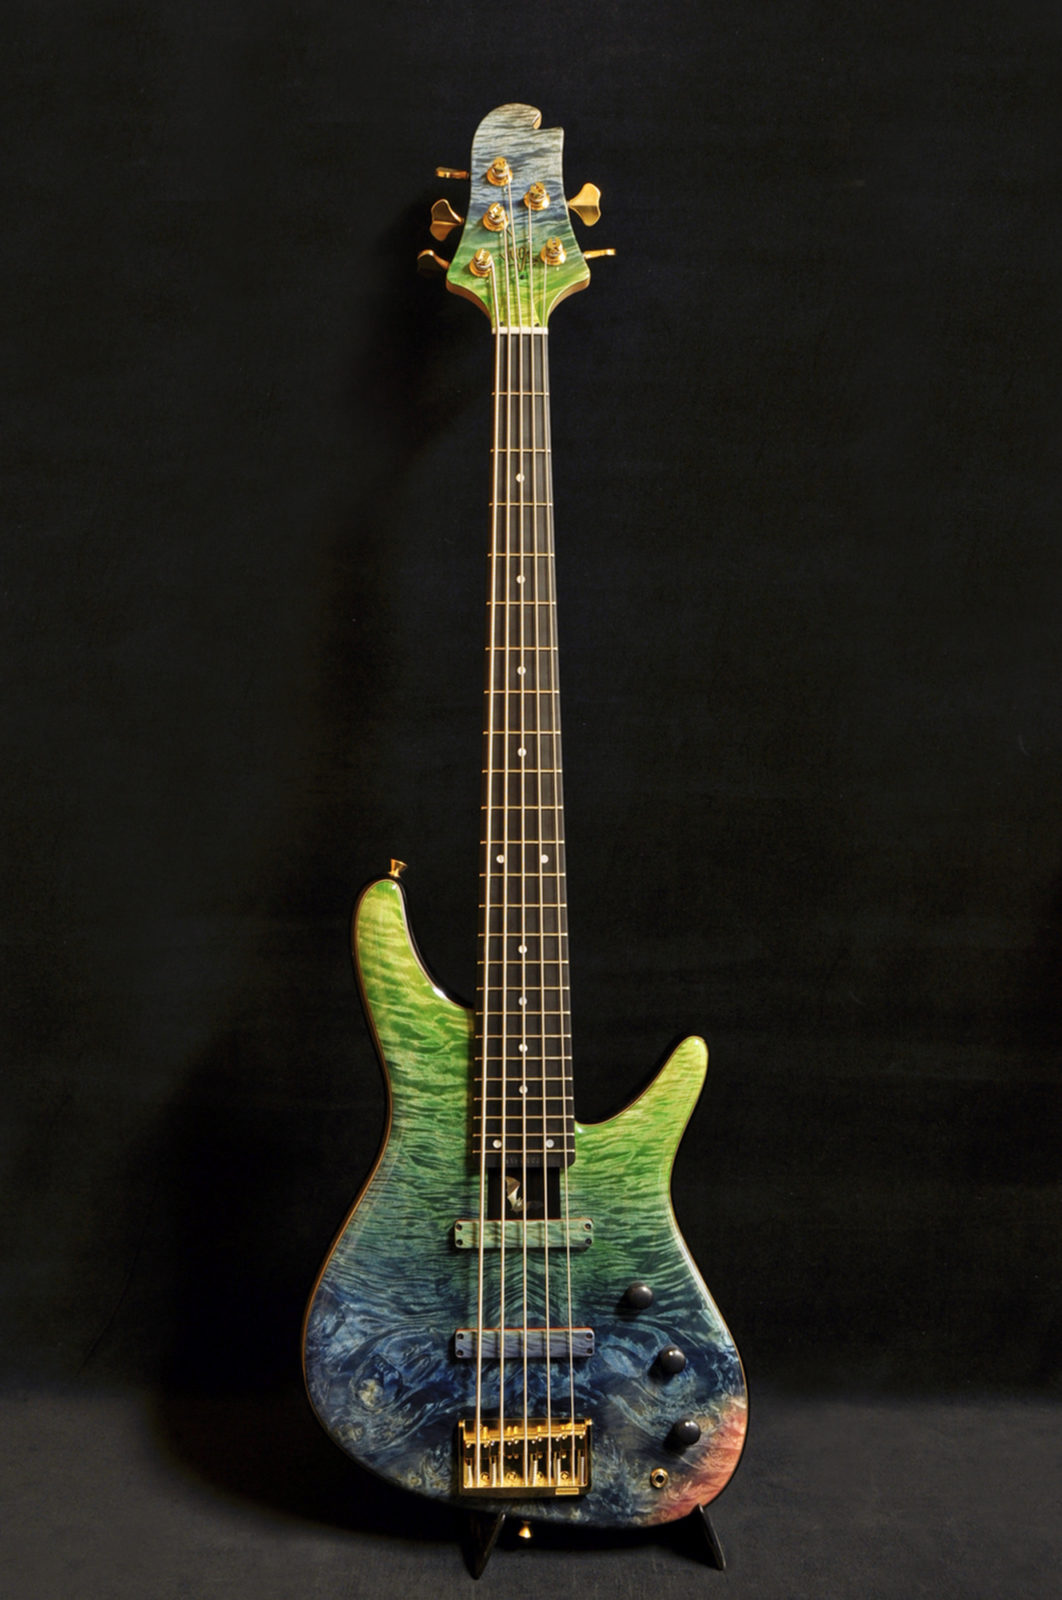 Bass Gallery : NB5 / Sugi Japan - Sugi Guitars / スギギター